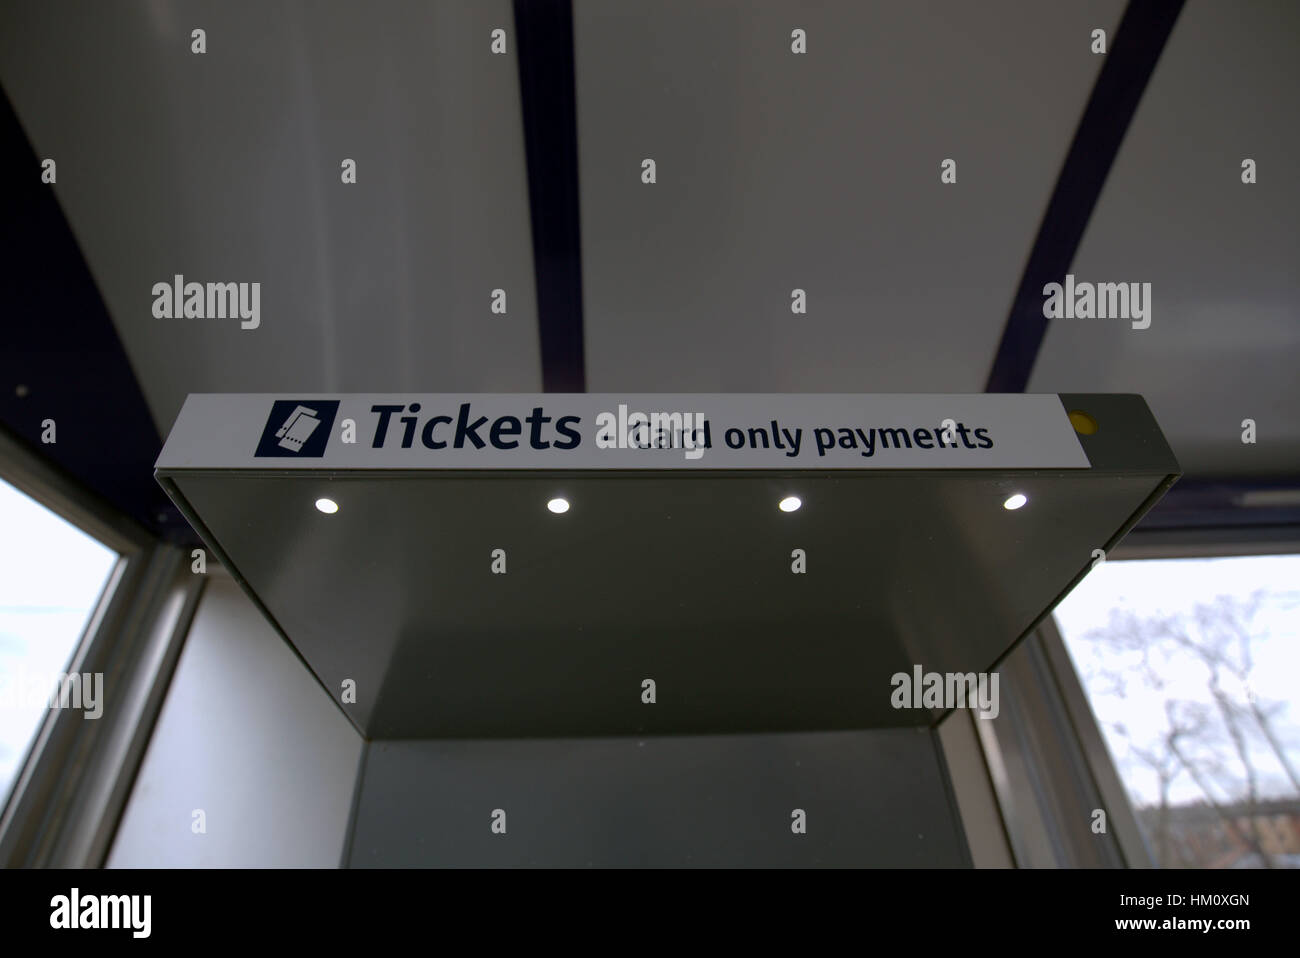 Bahn-Station Scotrail Tickets unterschreiben nur Kartenzahlungen Stockfoto